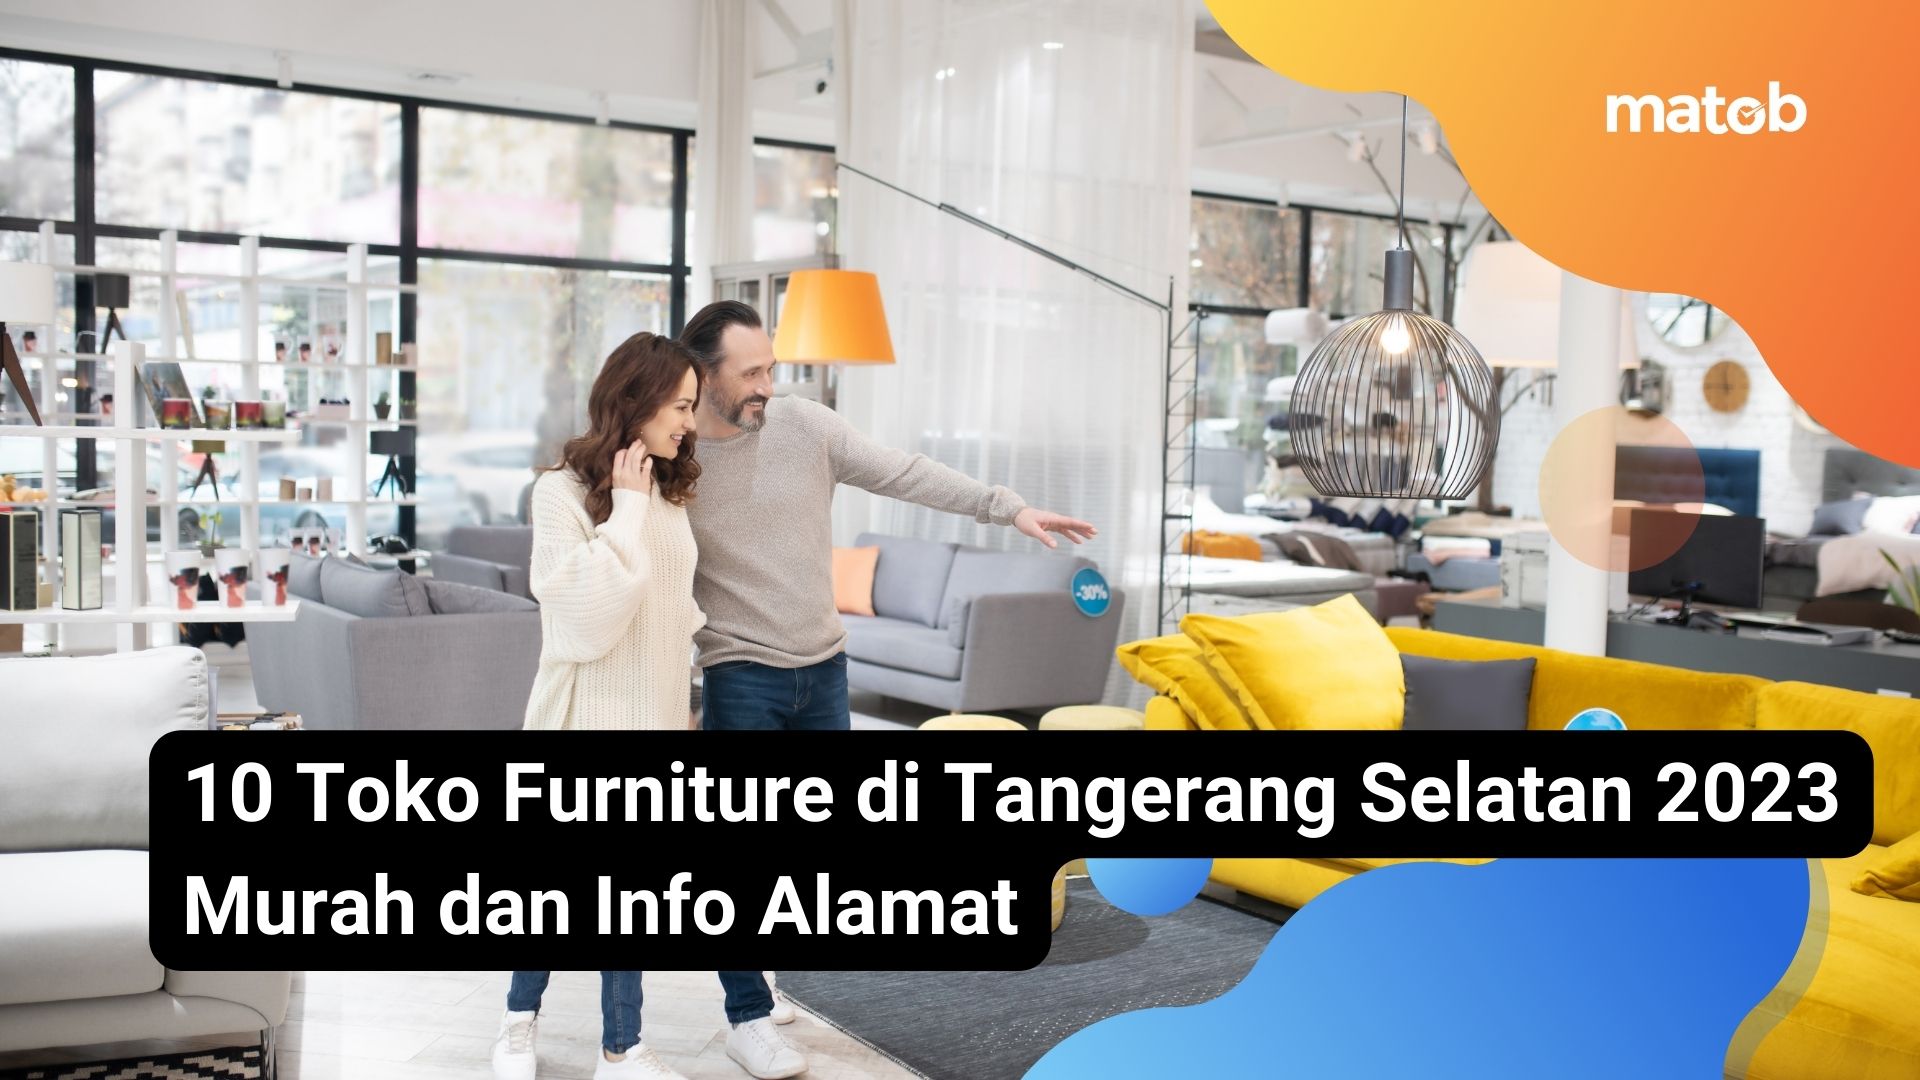 10 Toko Furniture di Tangerang Selatan 2023 Murah dan Info Alamat